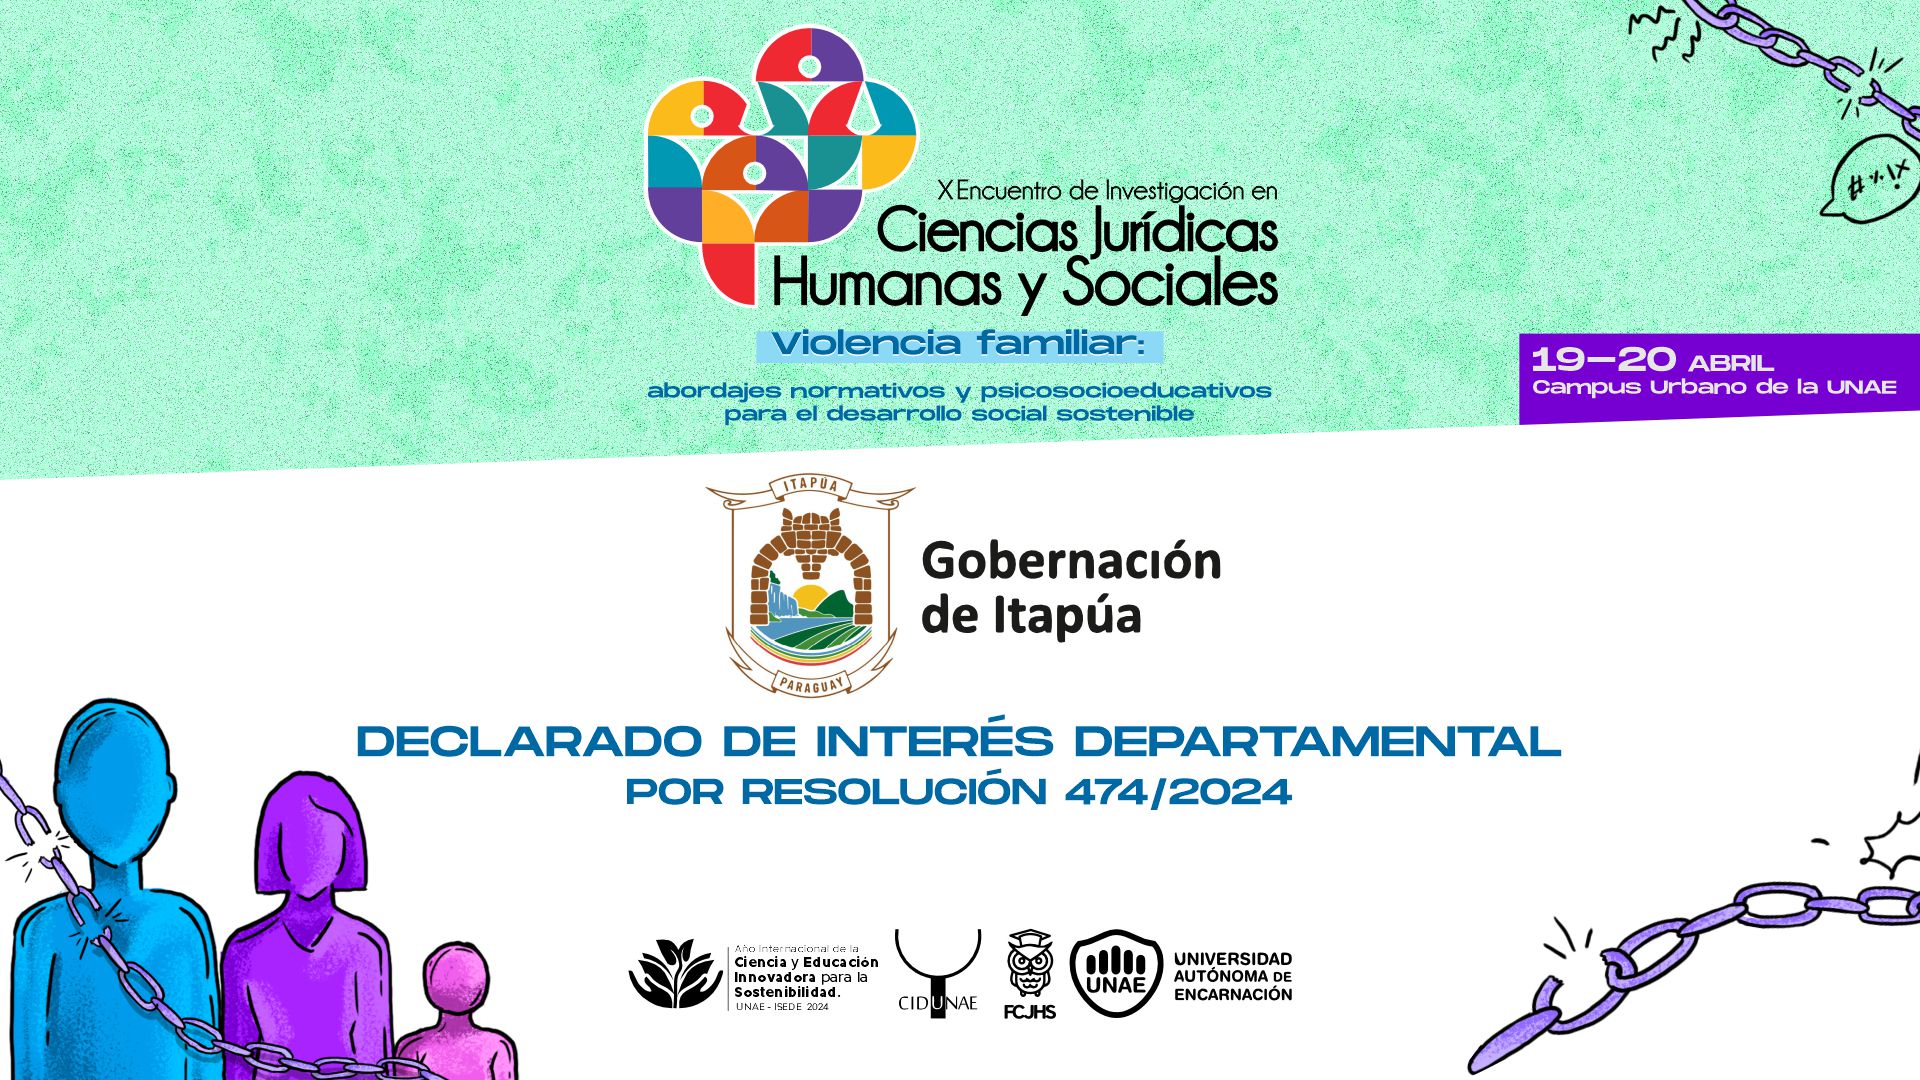 X Encuentro de Investigación en Ciencias Jurídicas, Humanas y Sociales declarado de interés departamental por la Gobernación de Itapúa